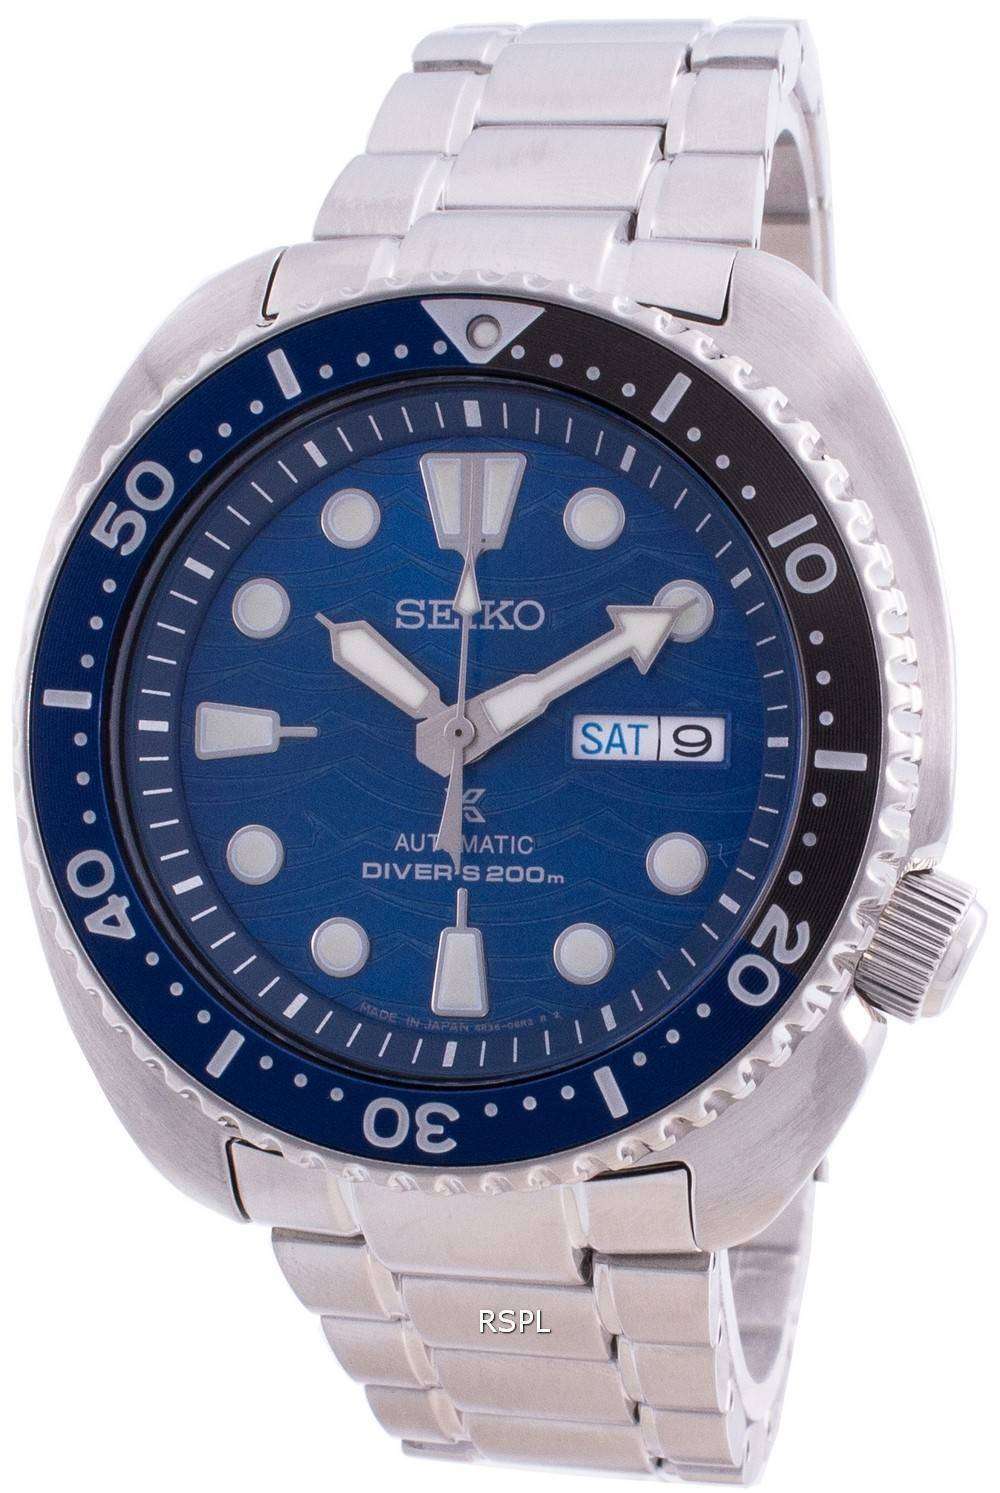 Reloj para hombre Seiko Prospex The Ocean Automatic Diver&#39,s SRPD21 SRPD21J1 SRPD21J 200M citywatches.es